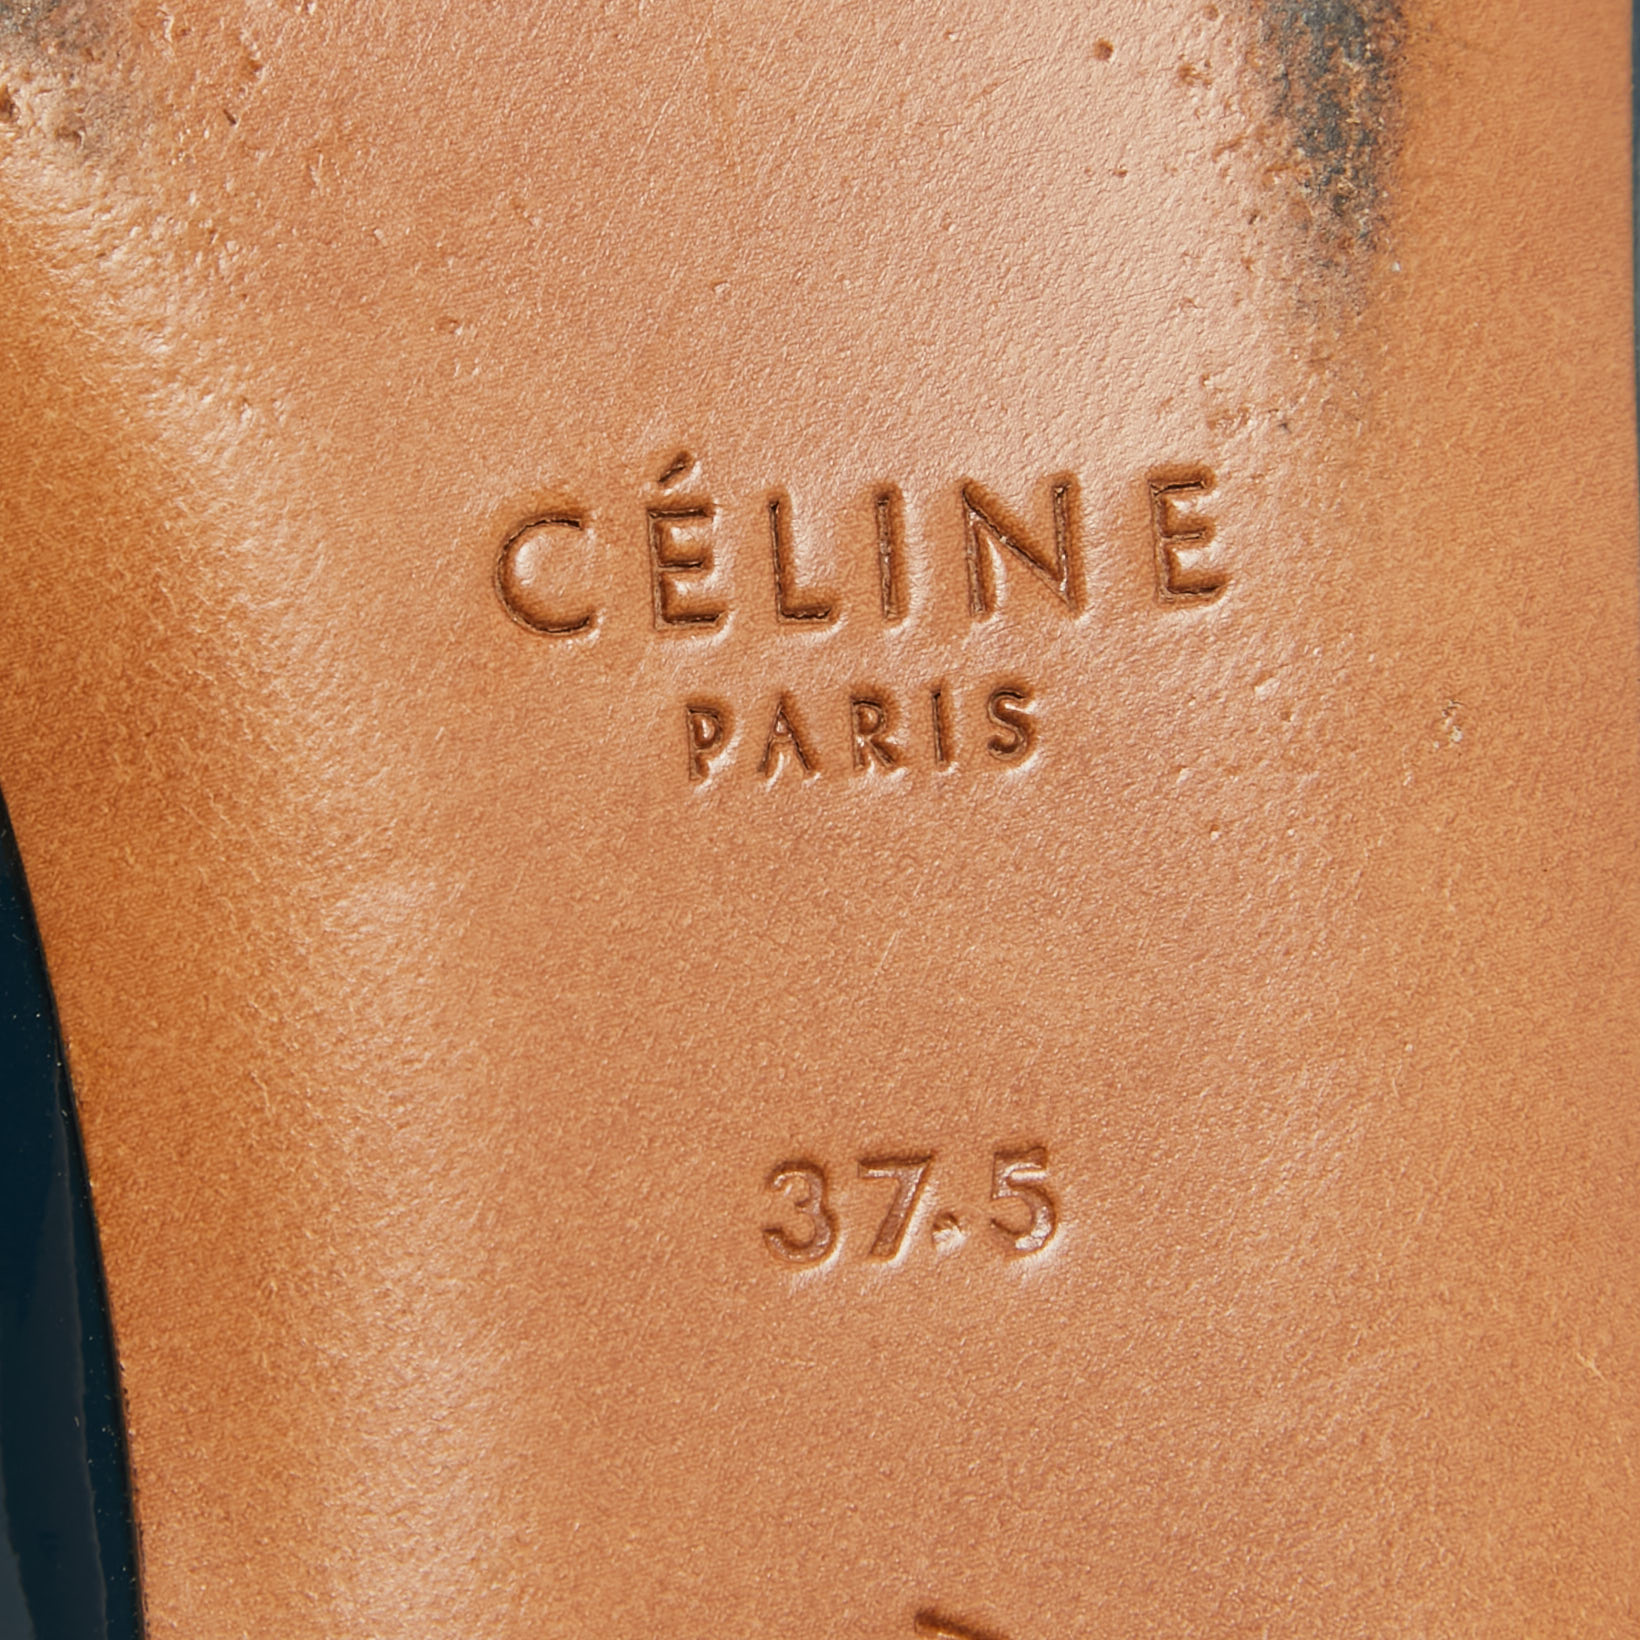 Celine Navy Blue Patent Leather V Neck Ballet Flats Size 37.5